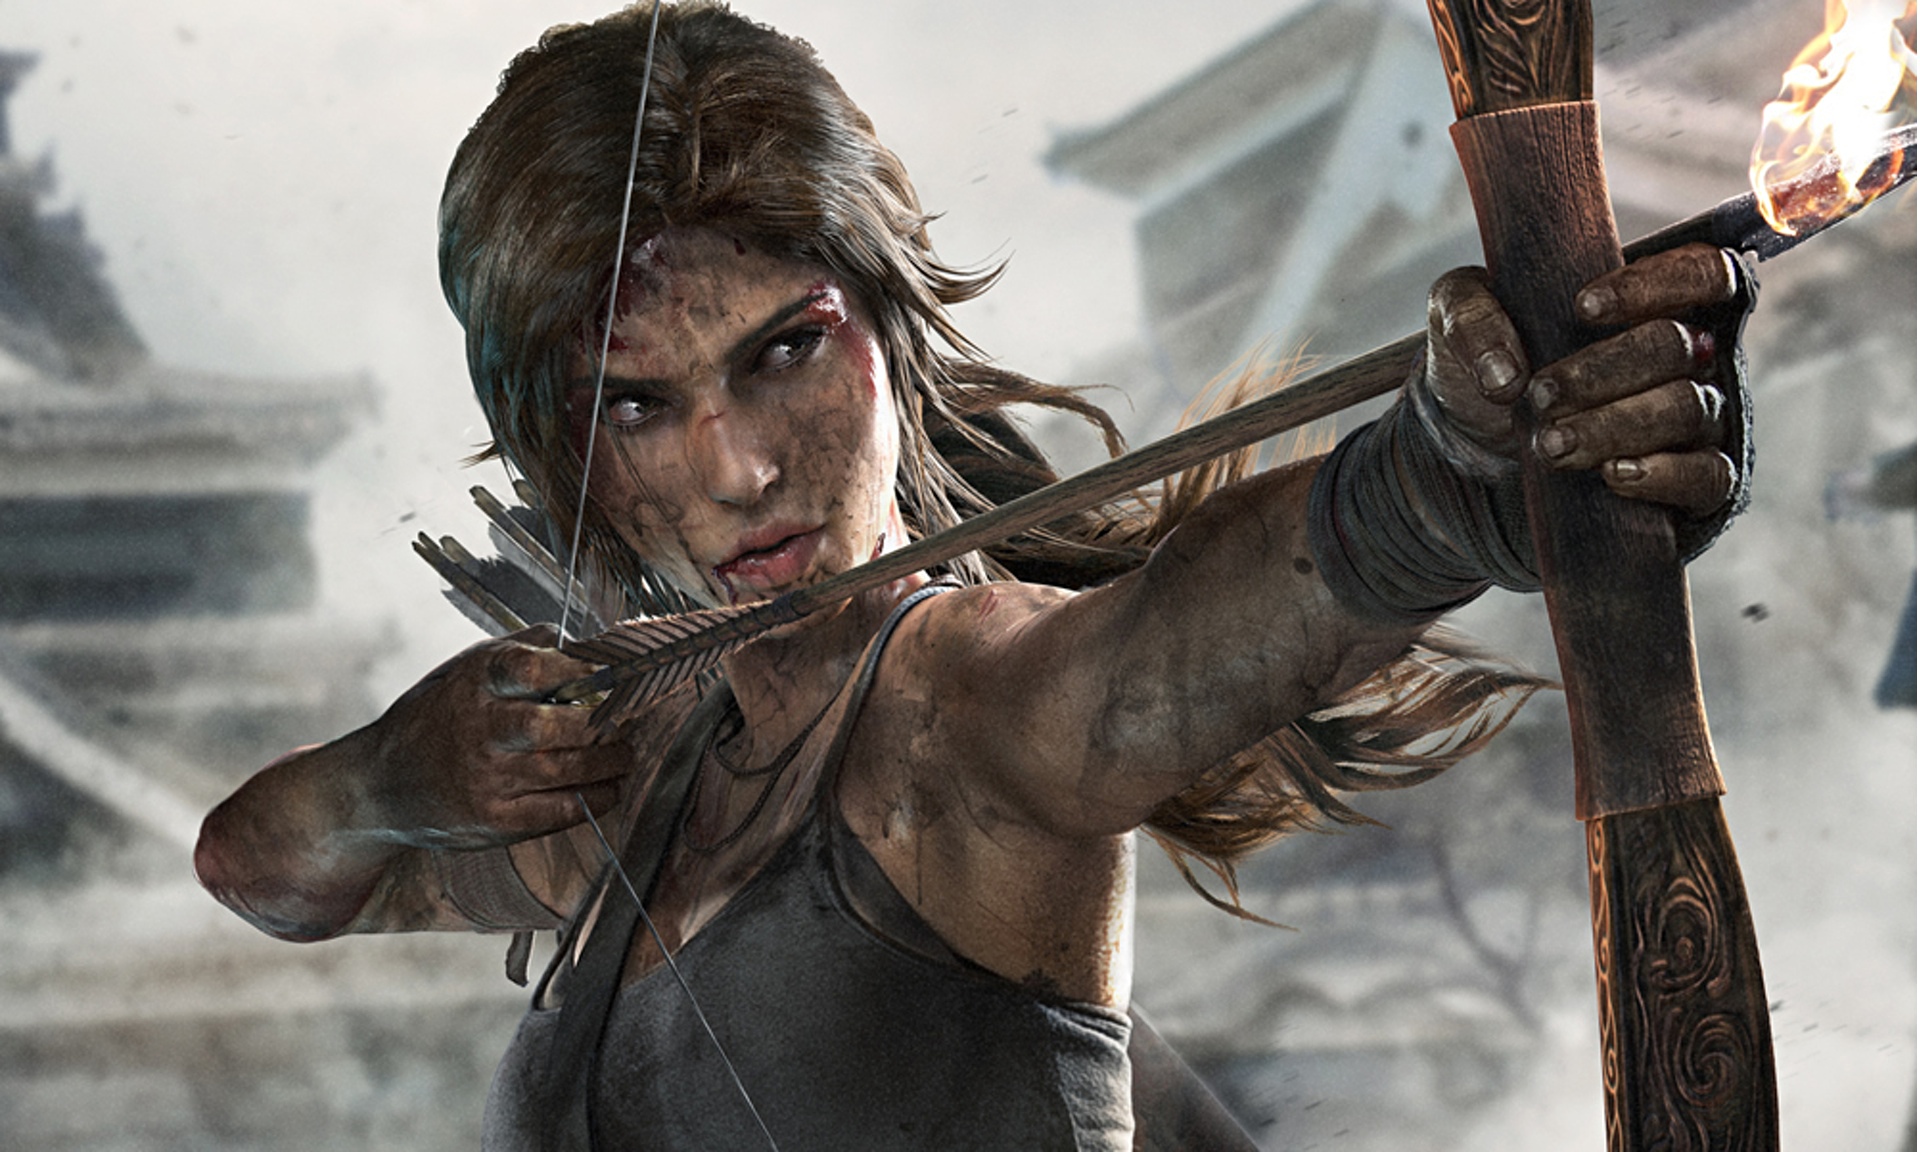 لعبة Rise of the Tomb Raider رُبما تصدر بأكتوبر لمنصة PS4